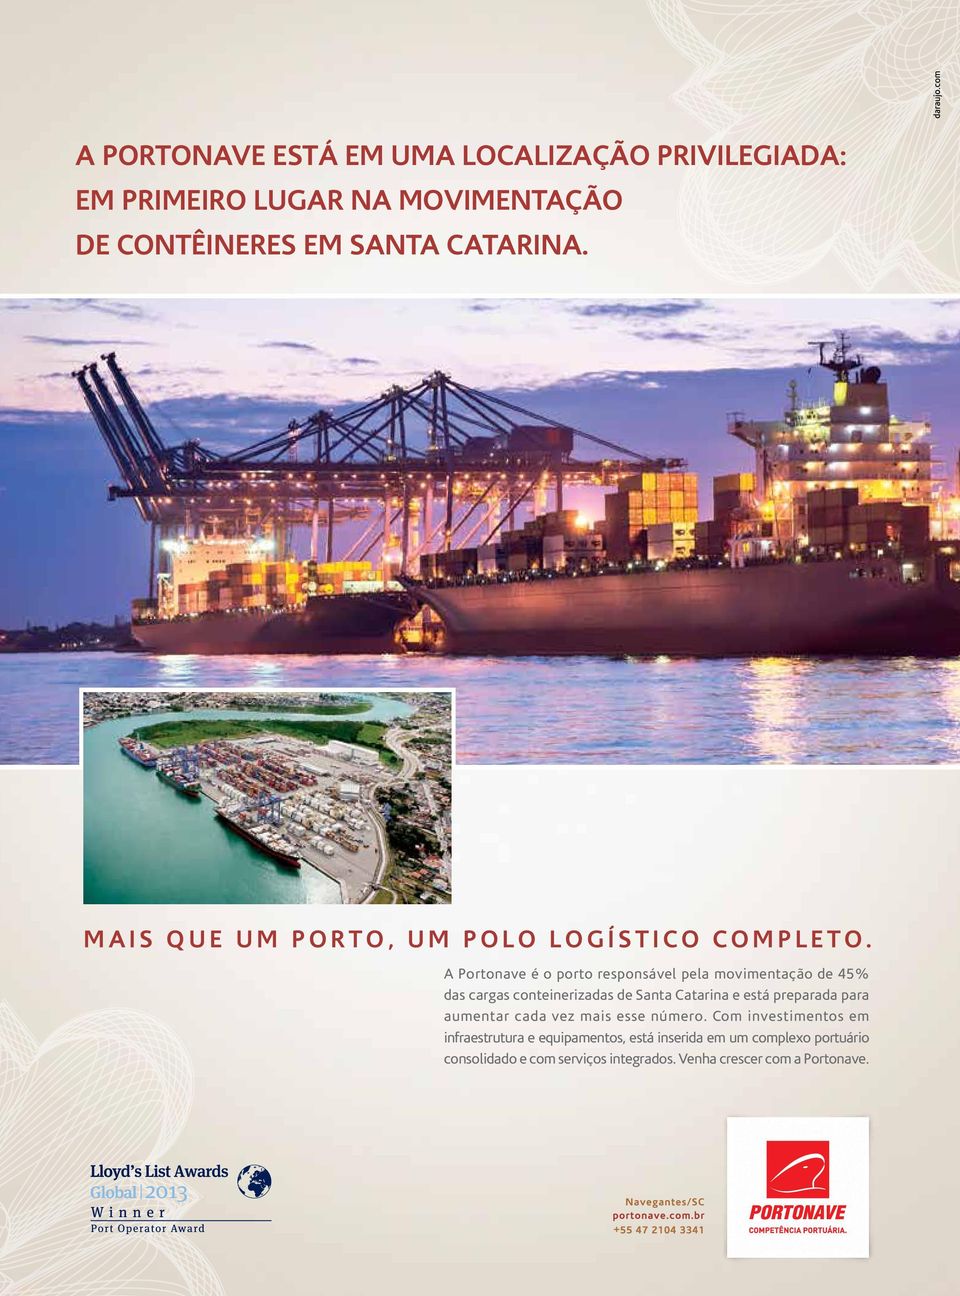 A Portonave é o porto responsável pela movimentação de 45% das cargas conteinerizadas de Santa Catarina e está preparada